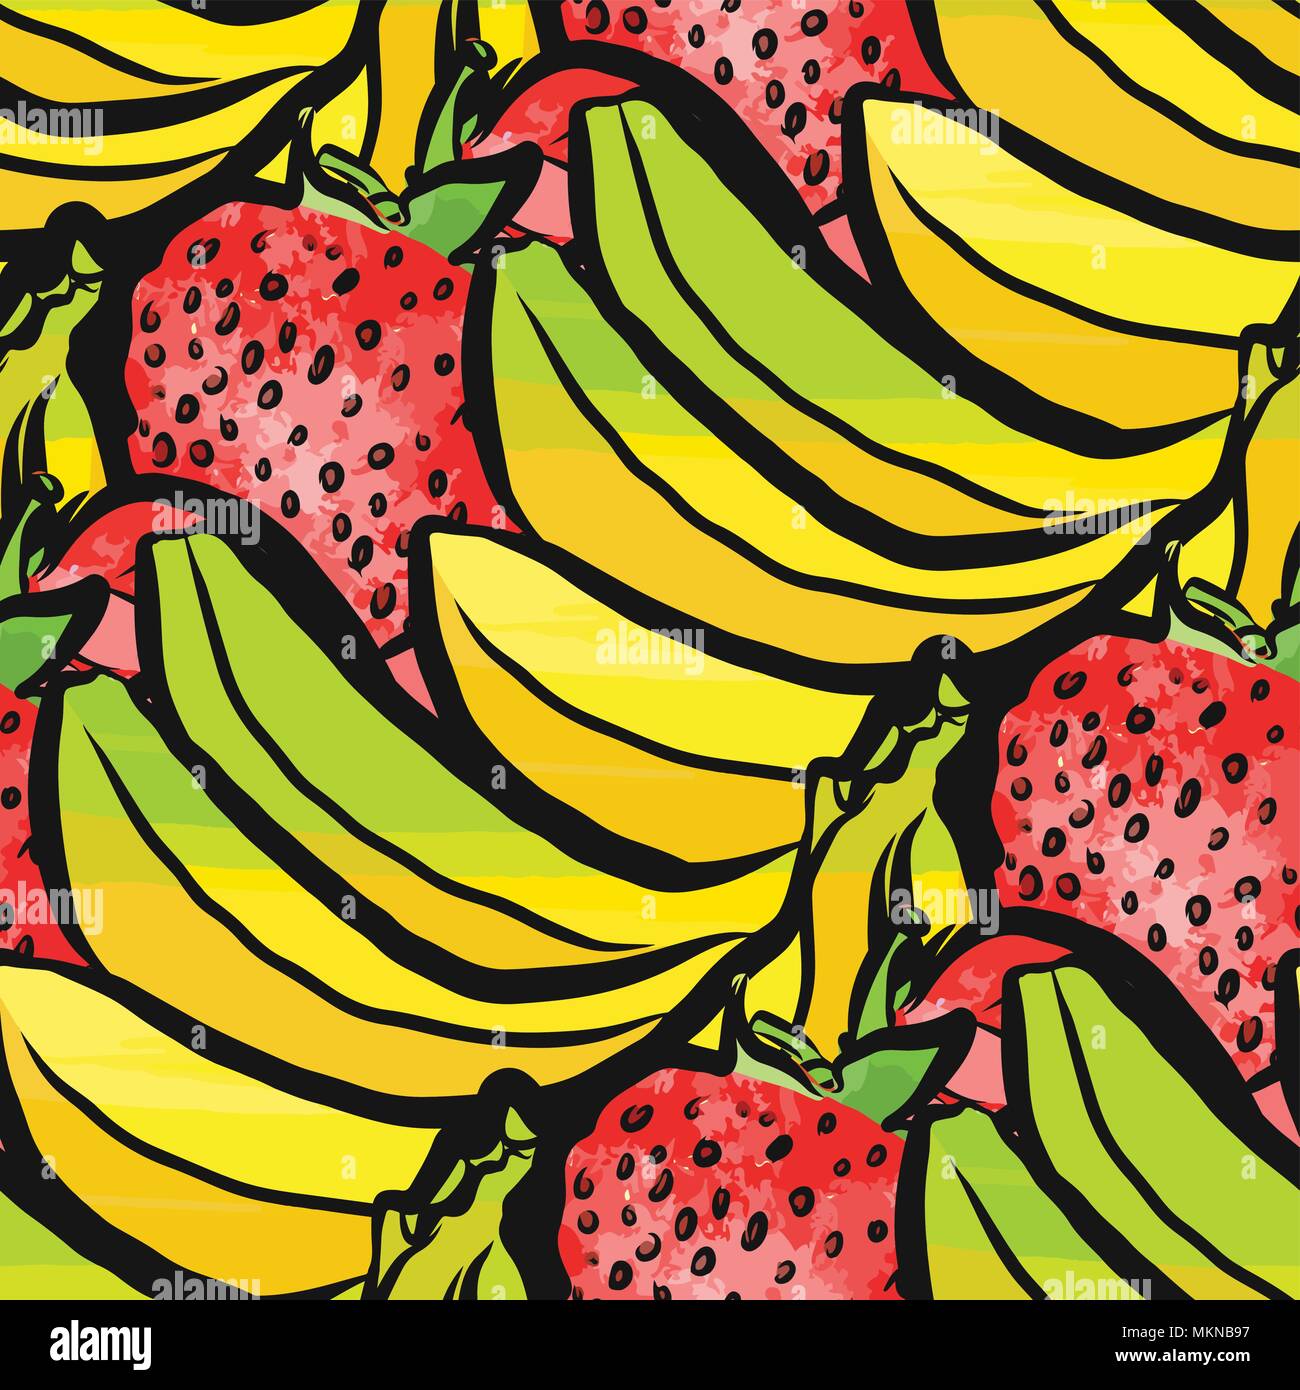 Vektor nahtlose Muster von Erdbeeren und Bananen. Von Hand gezeichnet und farbige Abbildung Stock Vektor